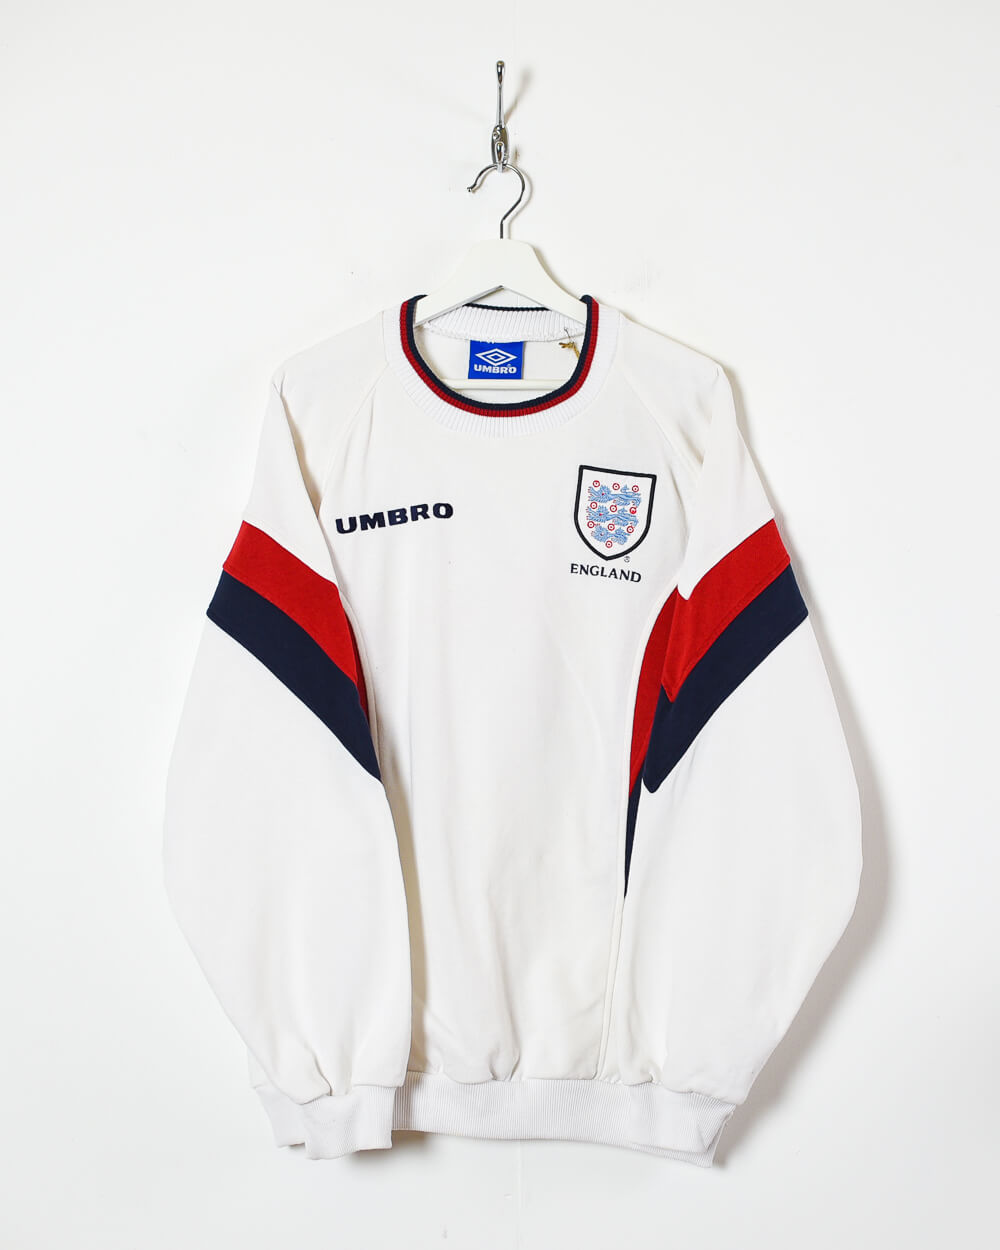 Umbro England 90s Sweatshirt - X-Large